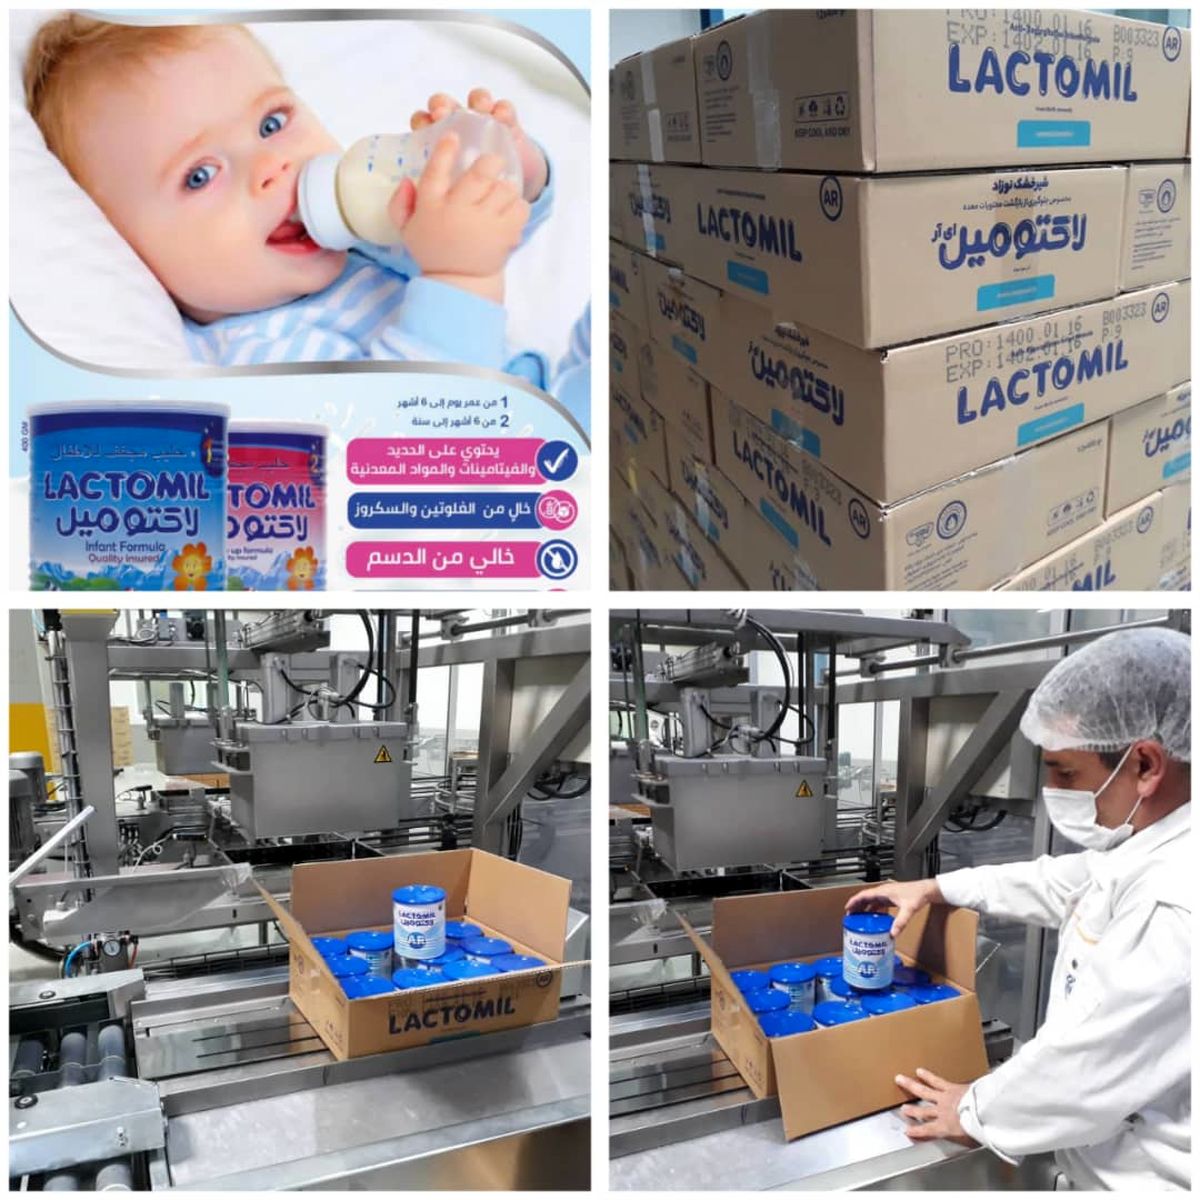 شیرخشک نوزاد پگاه به بازار کویت رسید